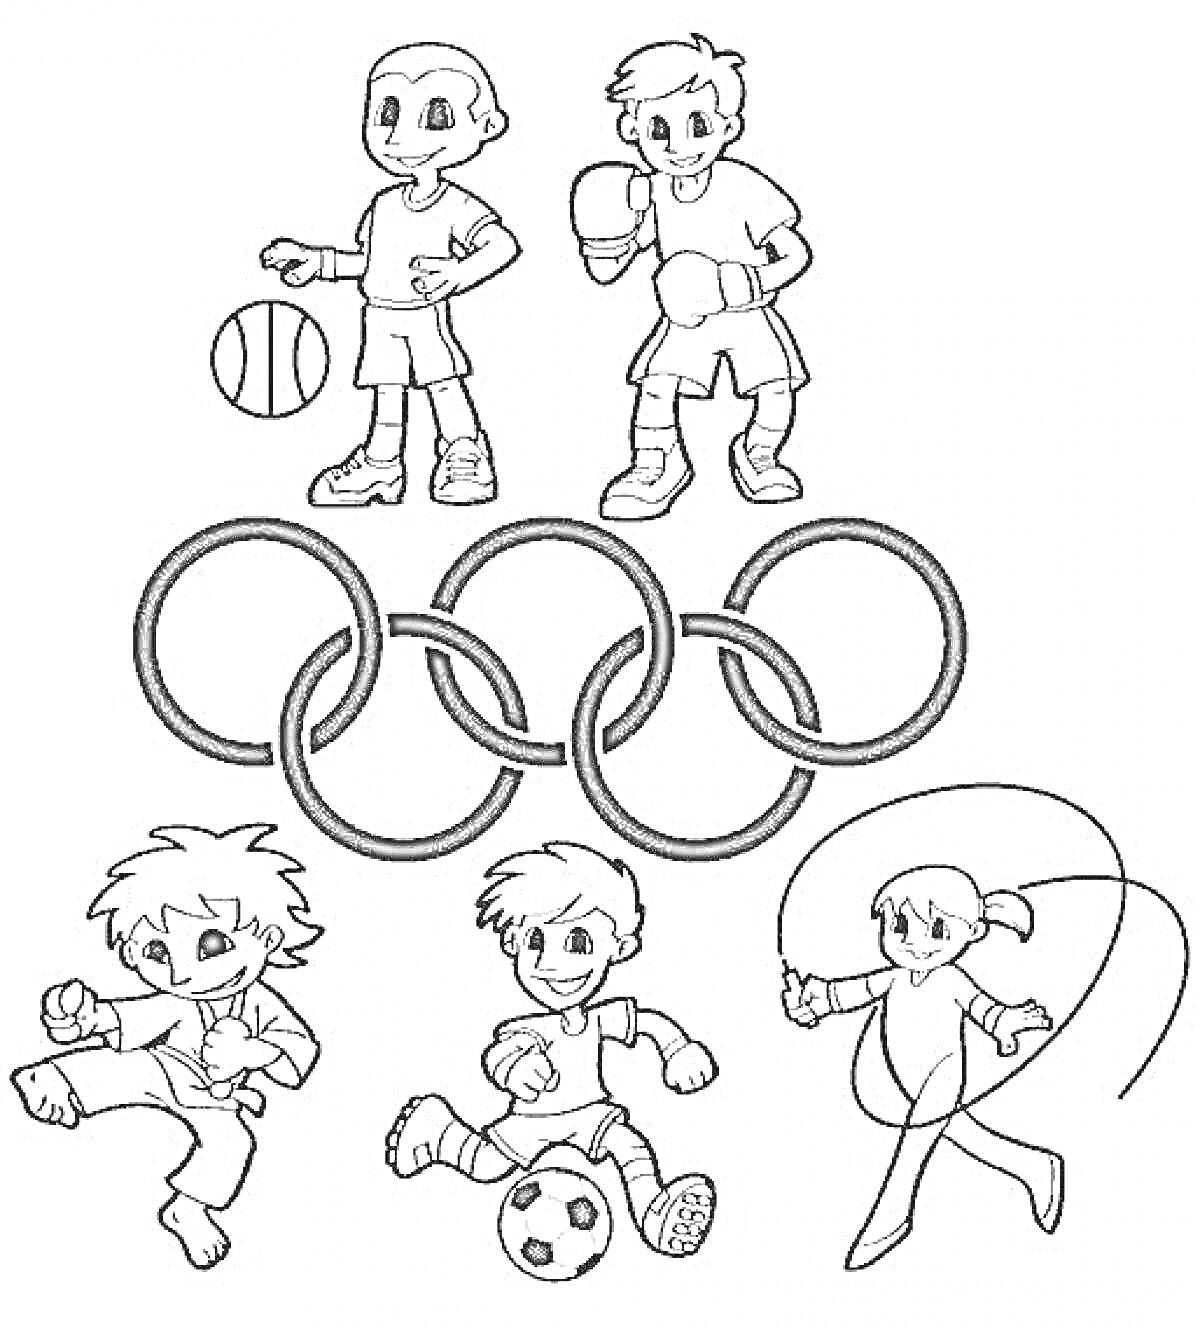 Дети, играющие в баскетбол, бокс, каратэ, футбол и прыгающие через скакалку, с Олимпийскими кольцами